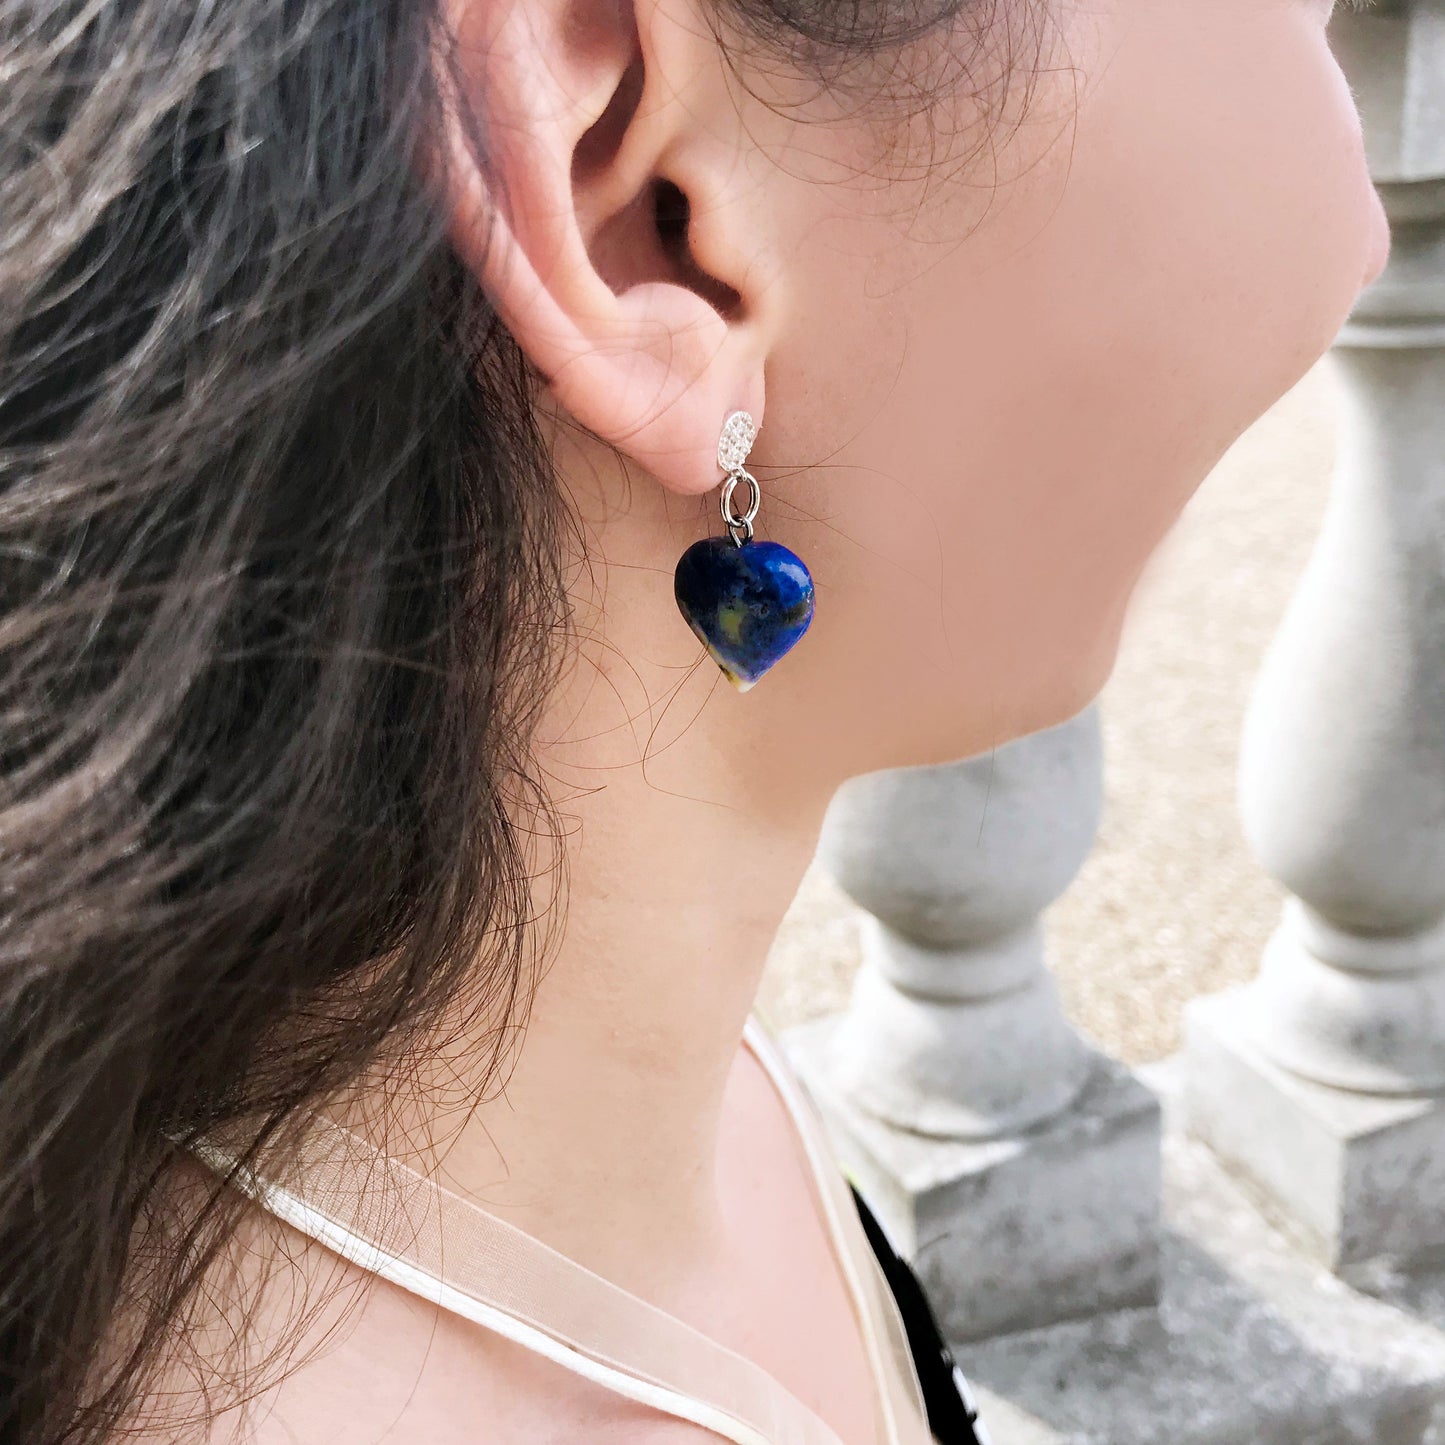 Sodalite Sterling Silver Earrings, Sodalite Stud Earrings, Blue Gemstone Heart Earrings | by nlanlaVictory-4